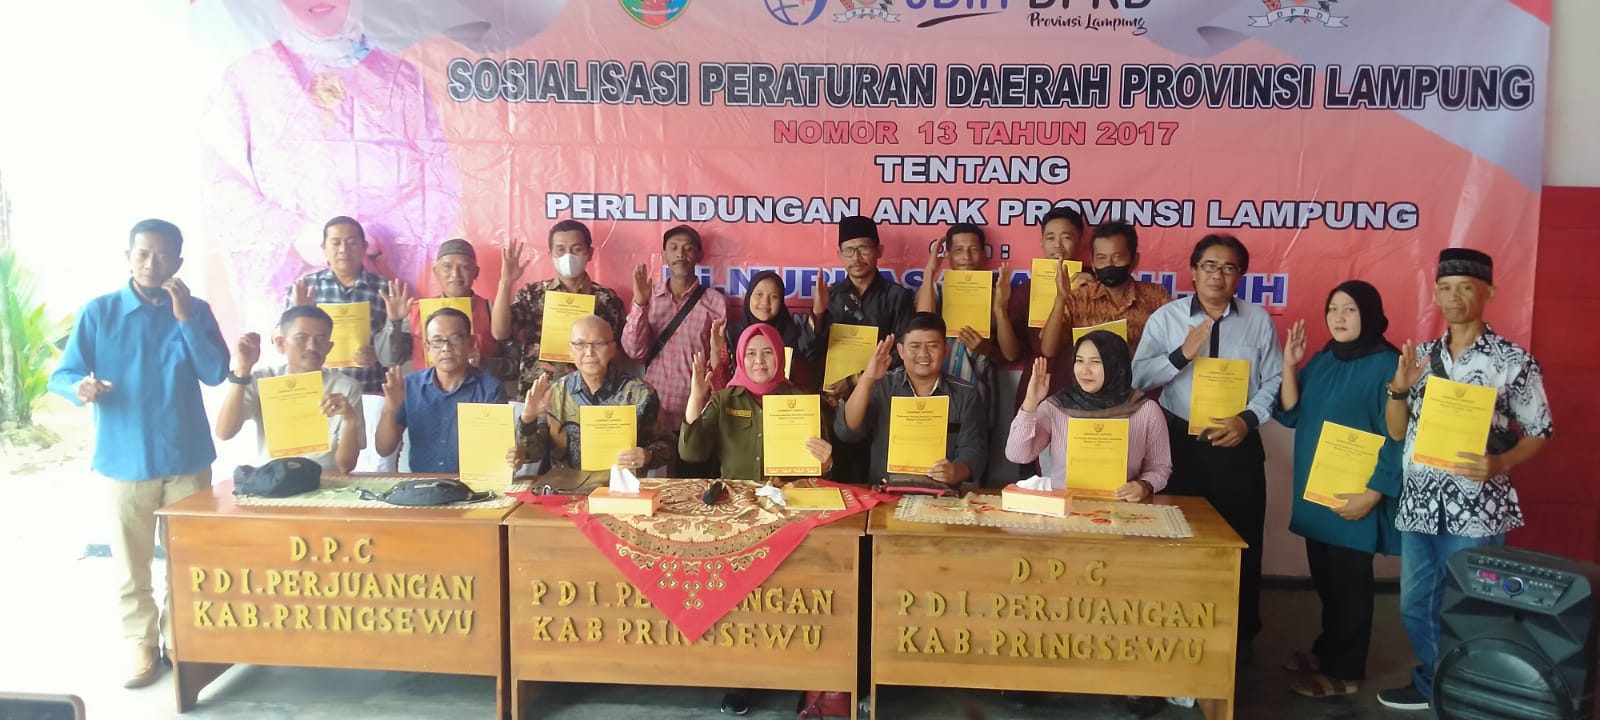 Anggota DPRD Lampung, Nurhasanah Sosialisasi Perda Tentang Anak di Pringsewu